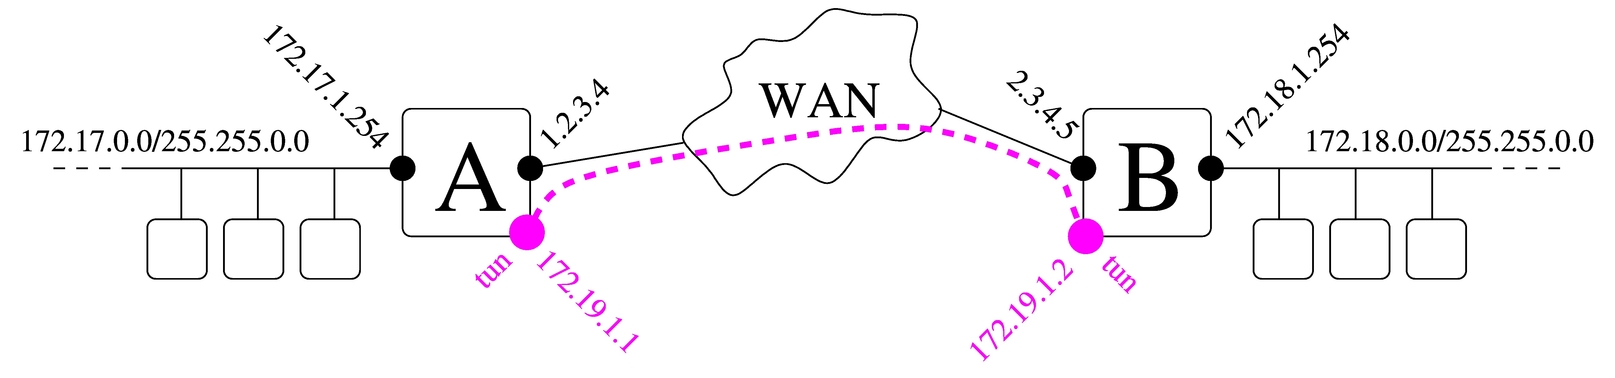 due reti private connesse assieme attraverso un tunnel